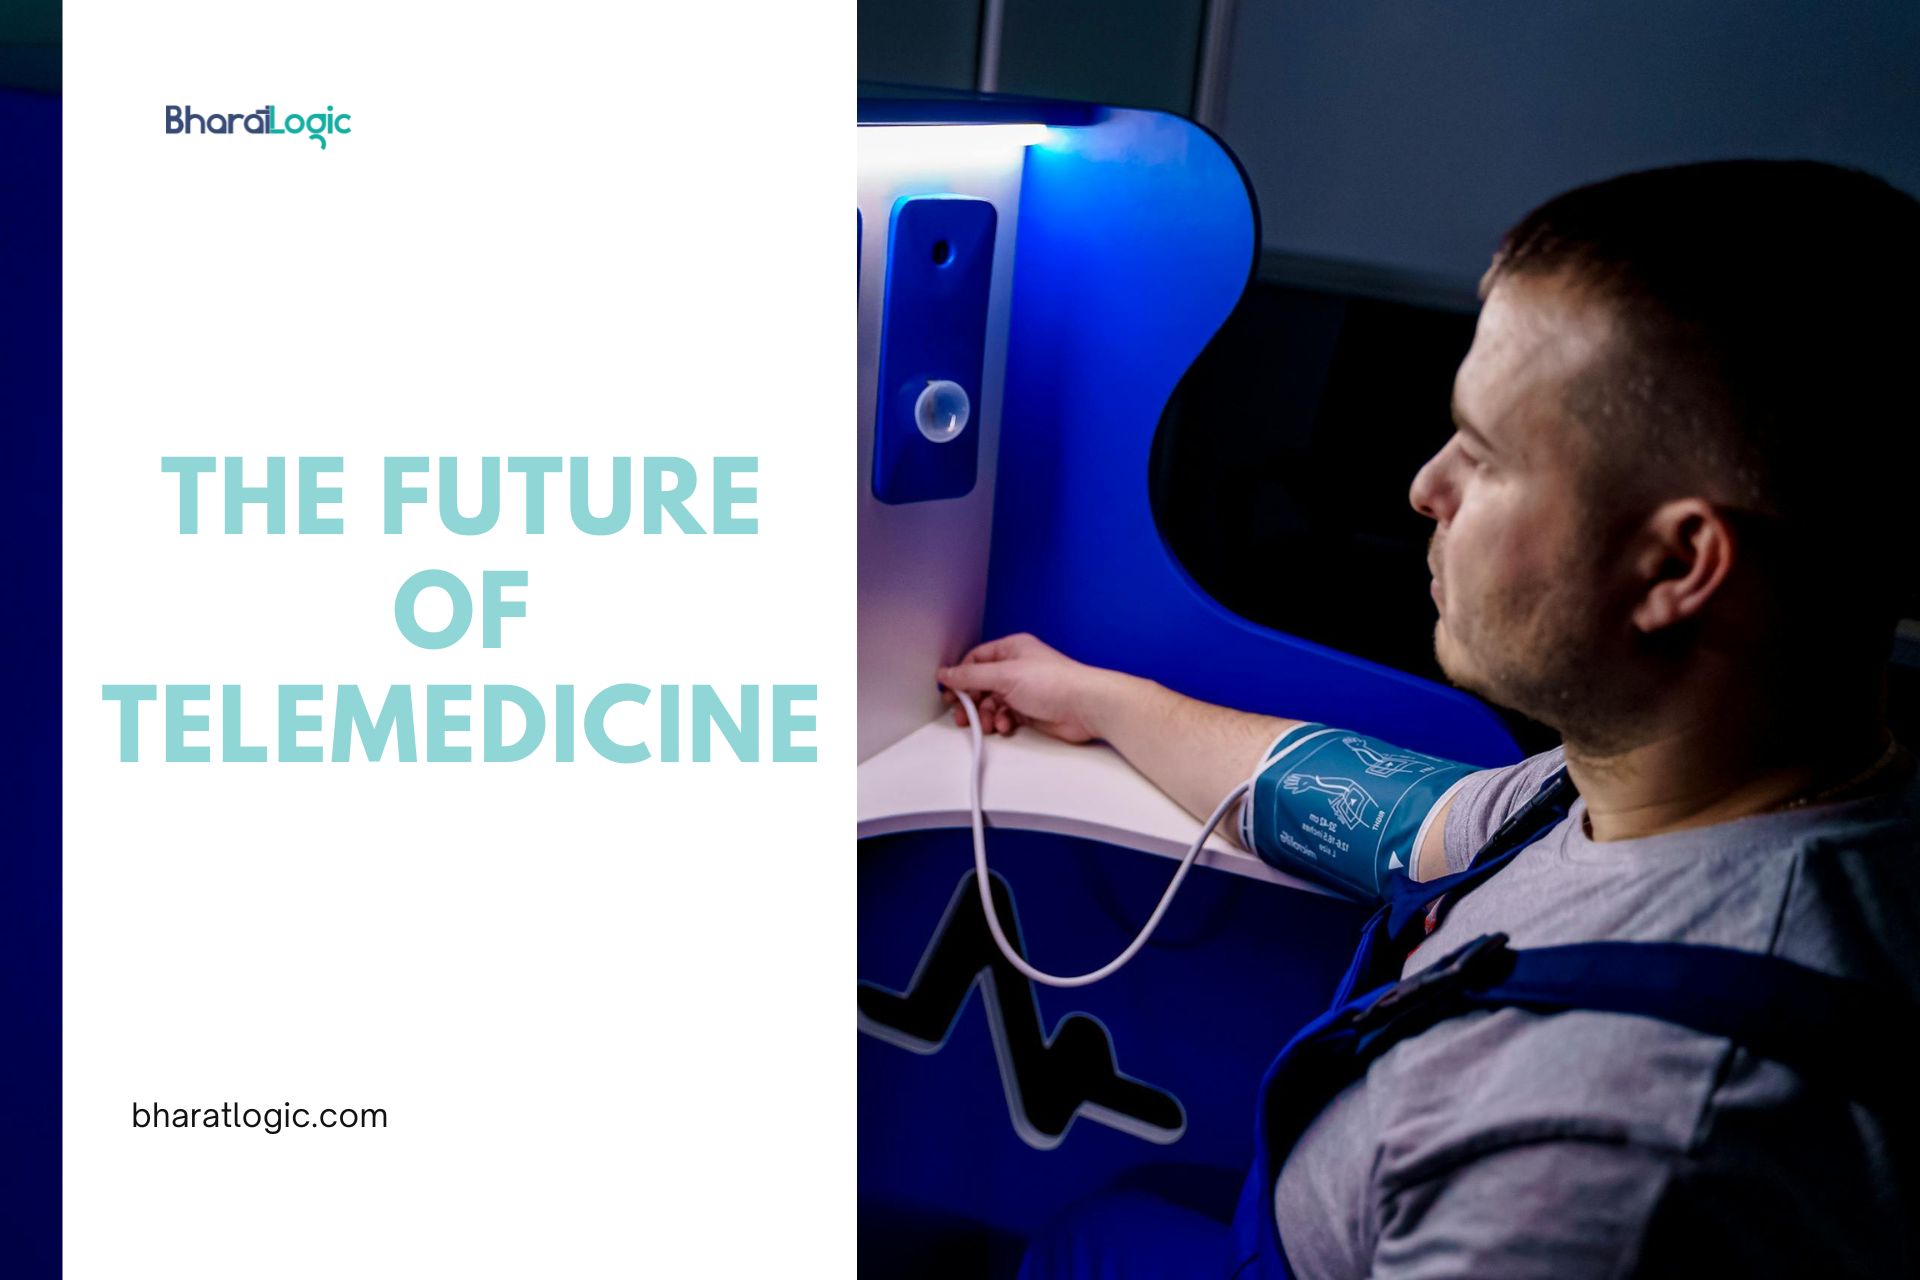 The Future of Telemedicine